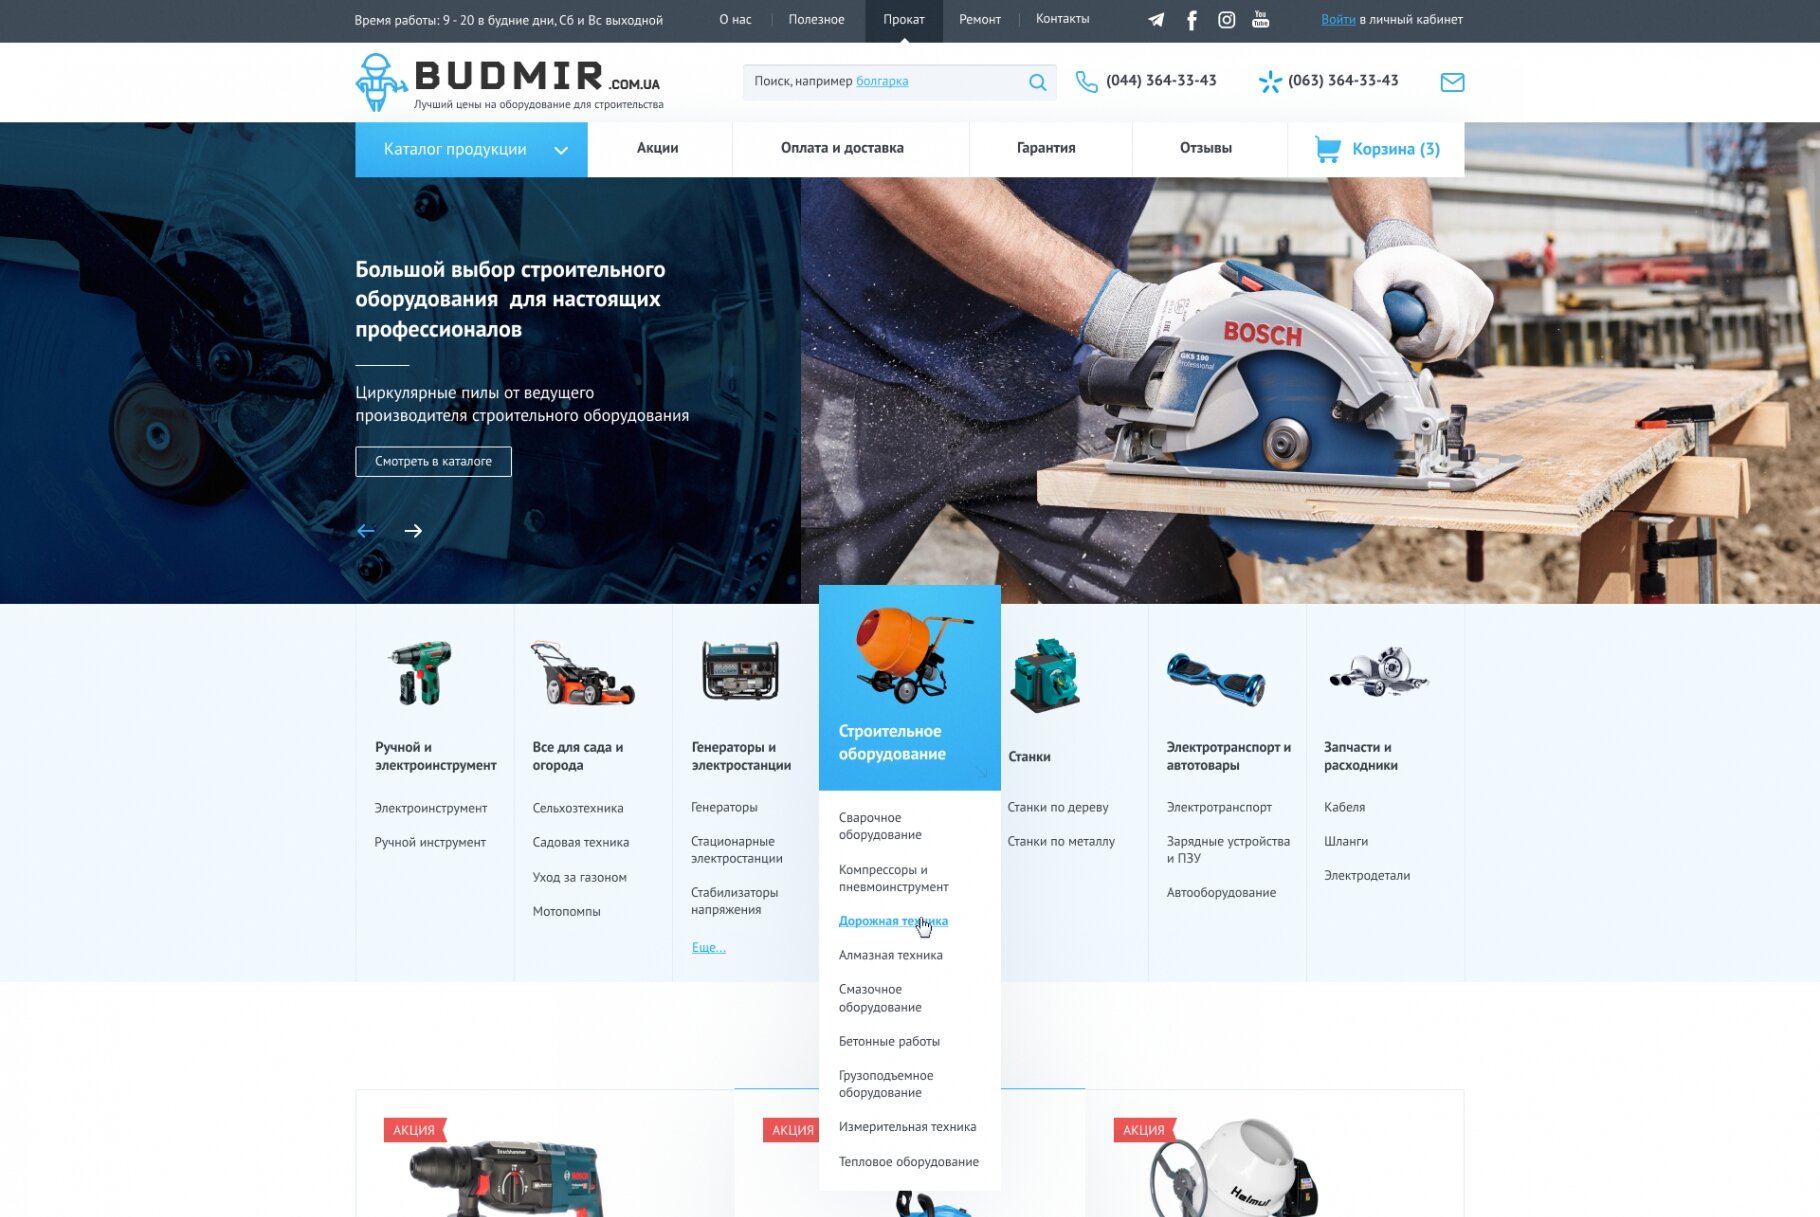 ™ Глянець, студія веб-дизайну — Budmir - ціни нижчі, доставка швидша_1